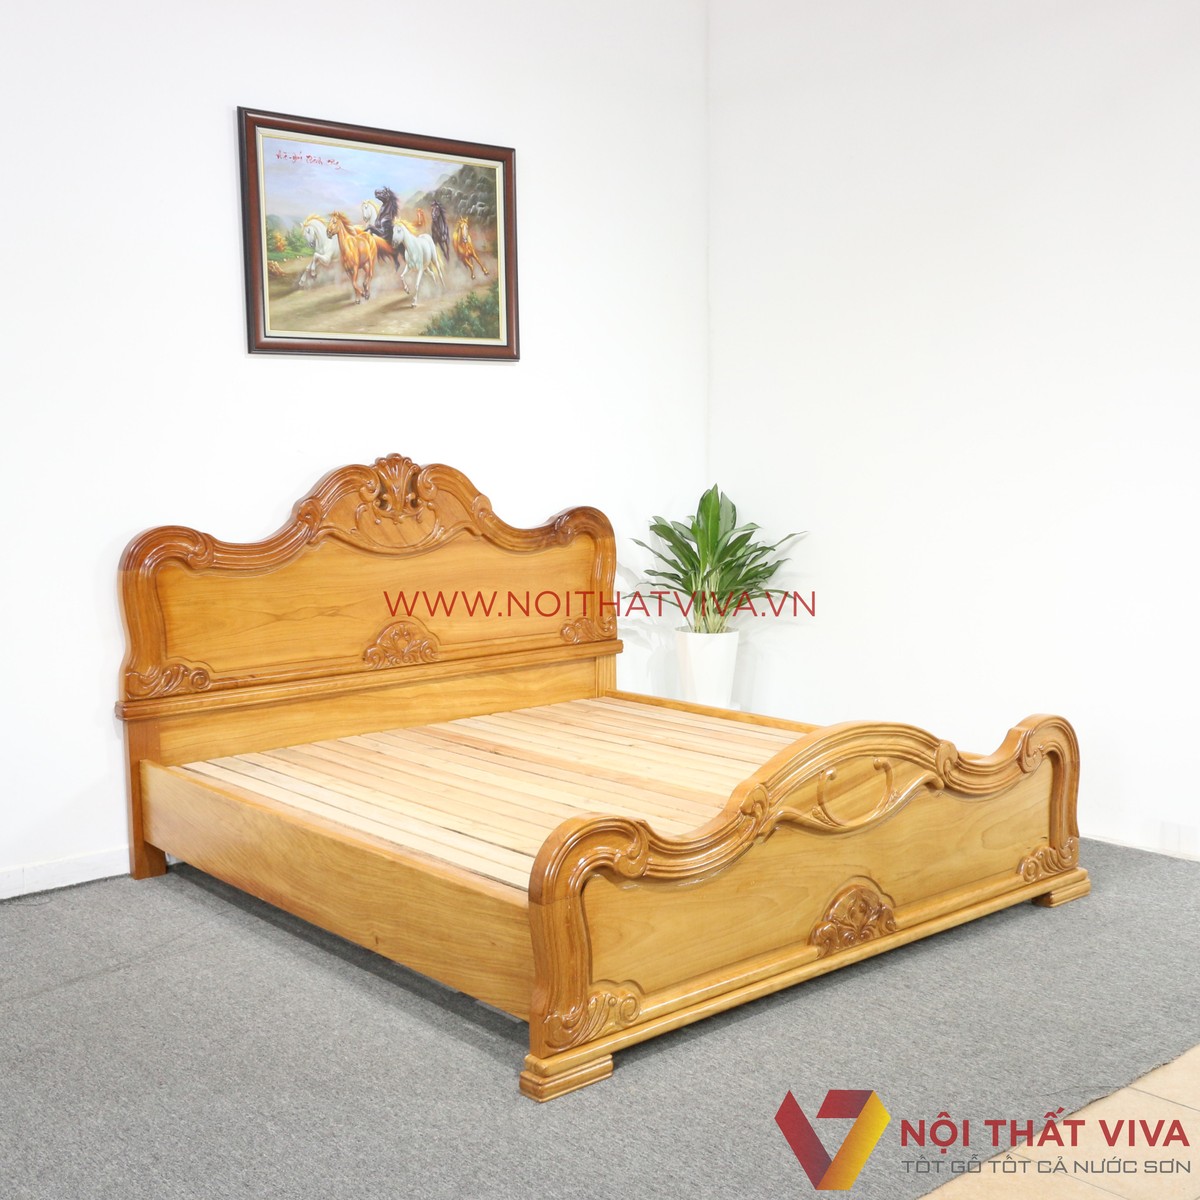 Địa chỉ cung cấp giường ngủ Hóc Môn chất lượng với giá xưởng tốt nhất